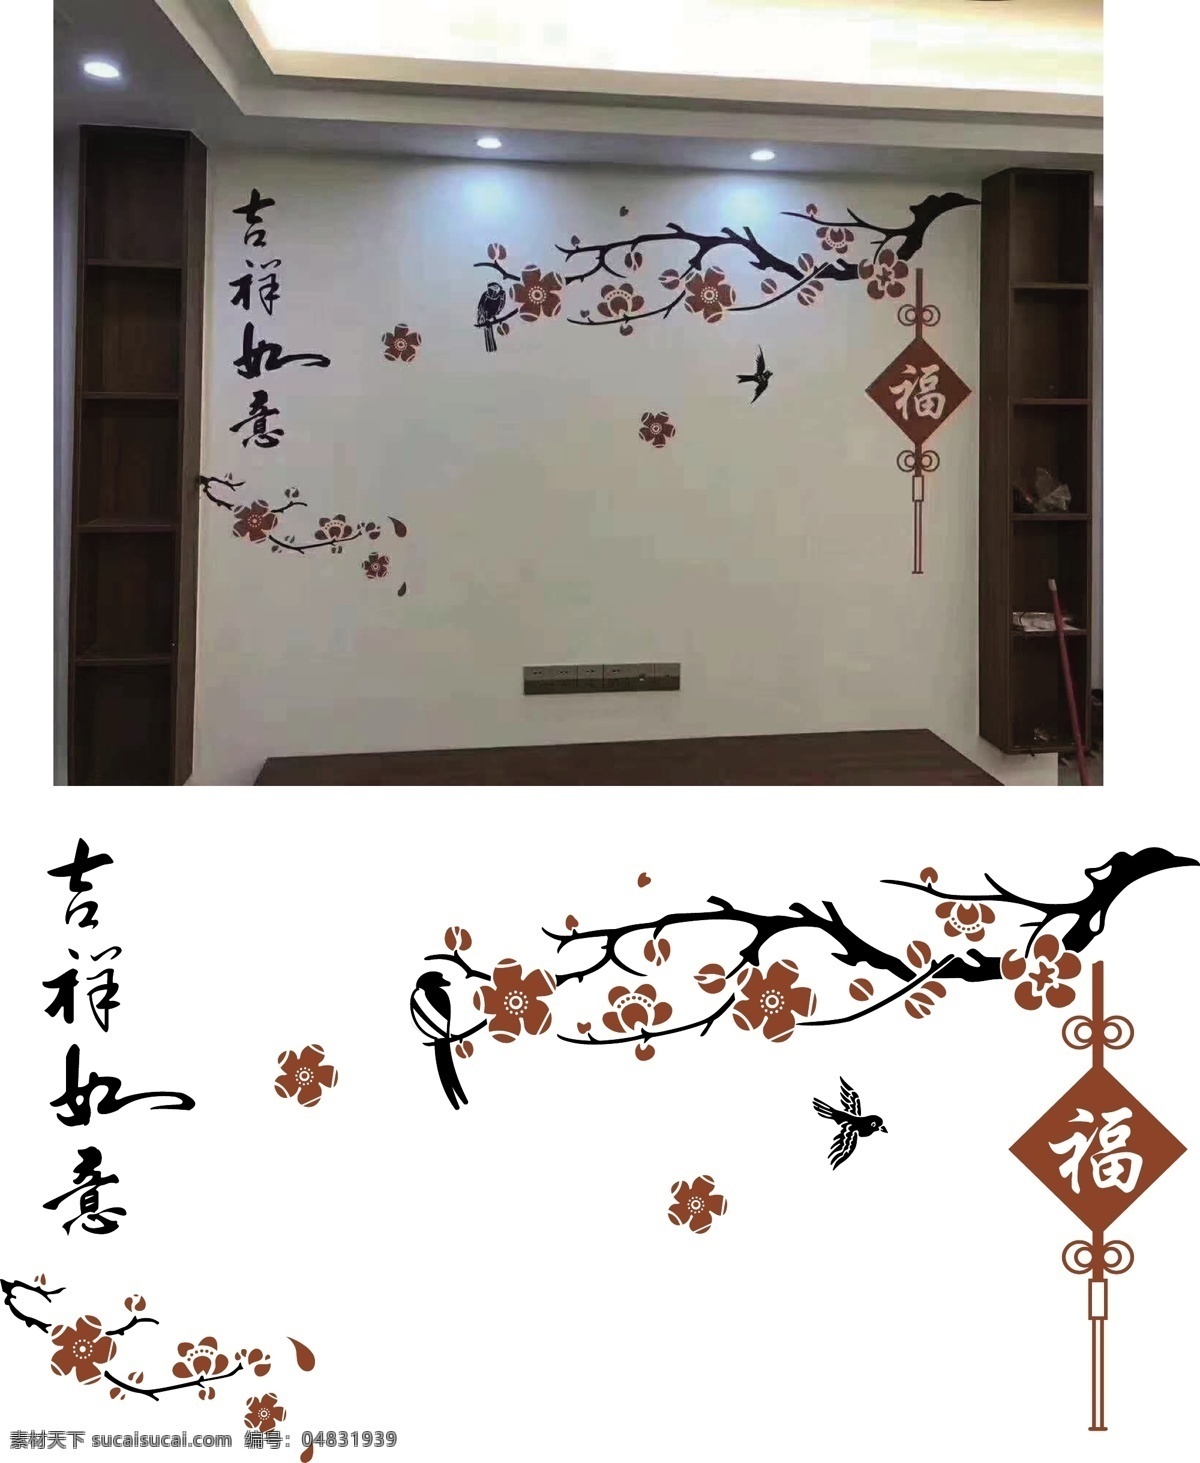 梅花 吉祥如意 喜鹊 中国结 硅藻泥 室内广告设计